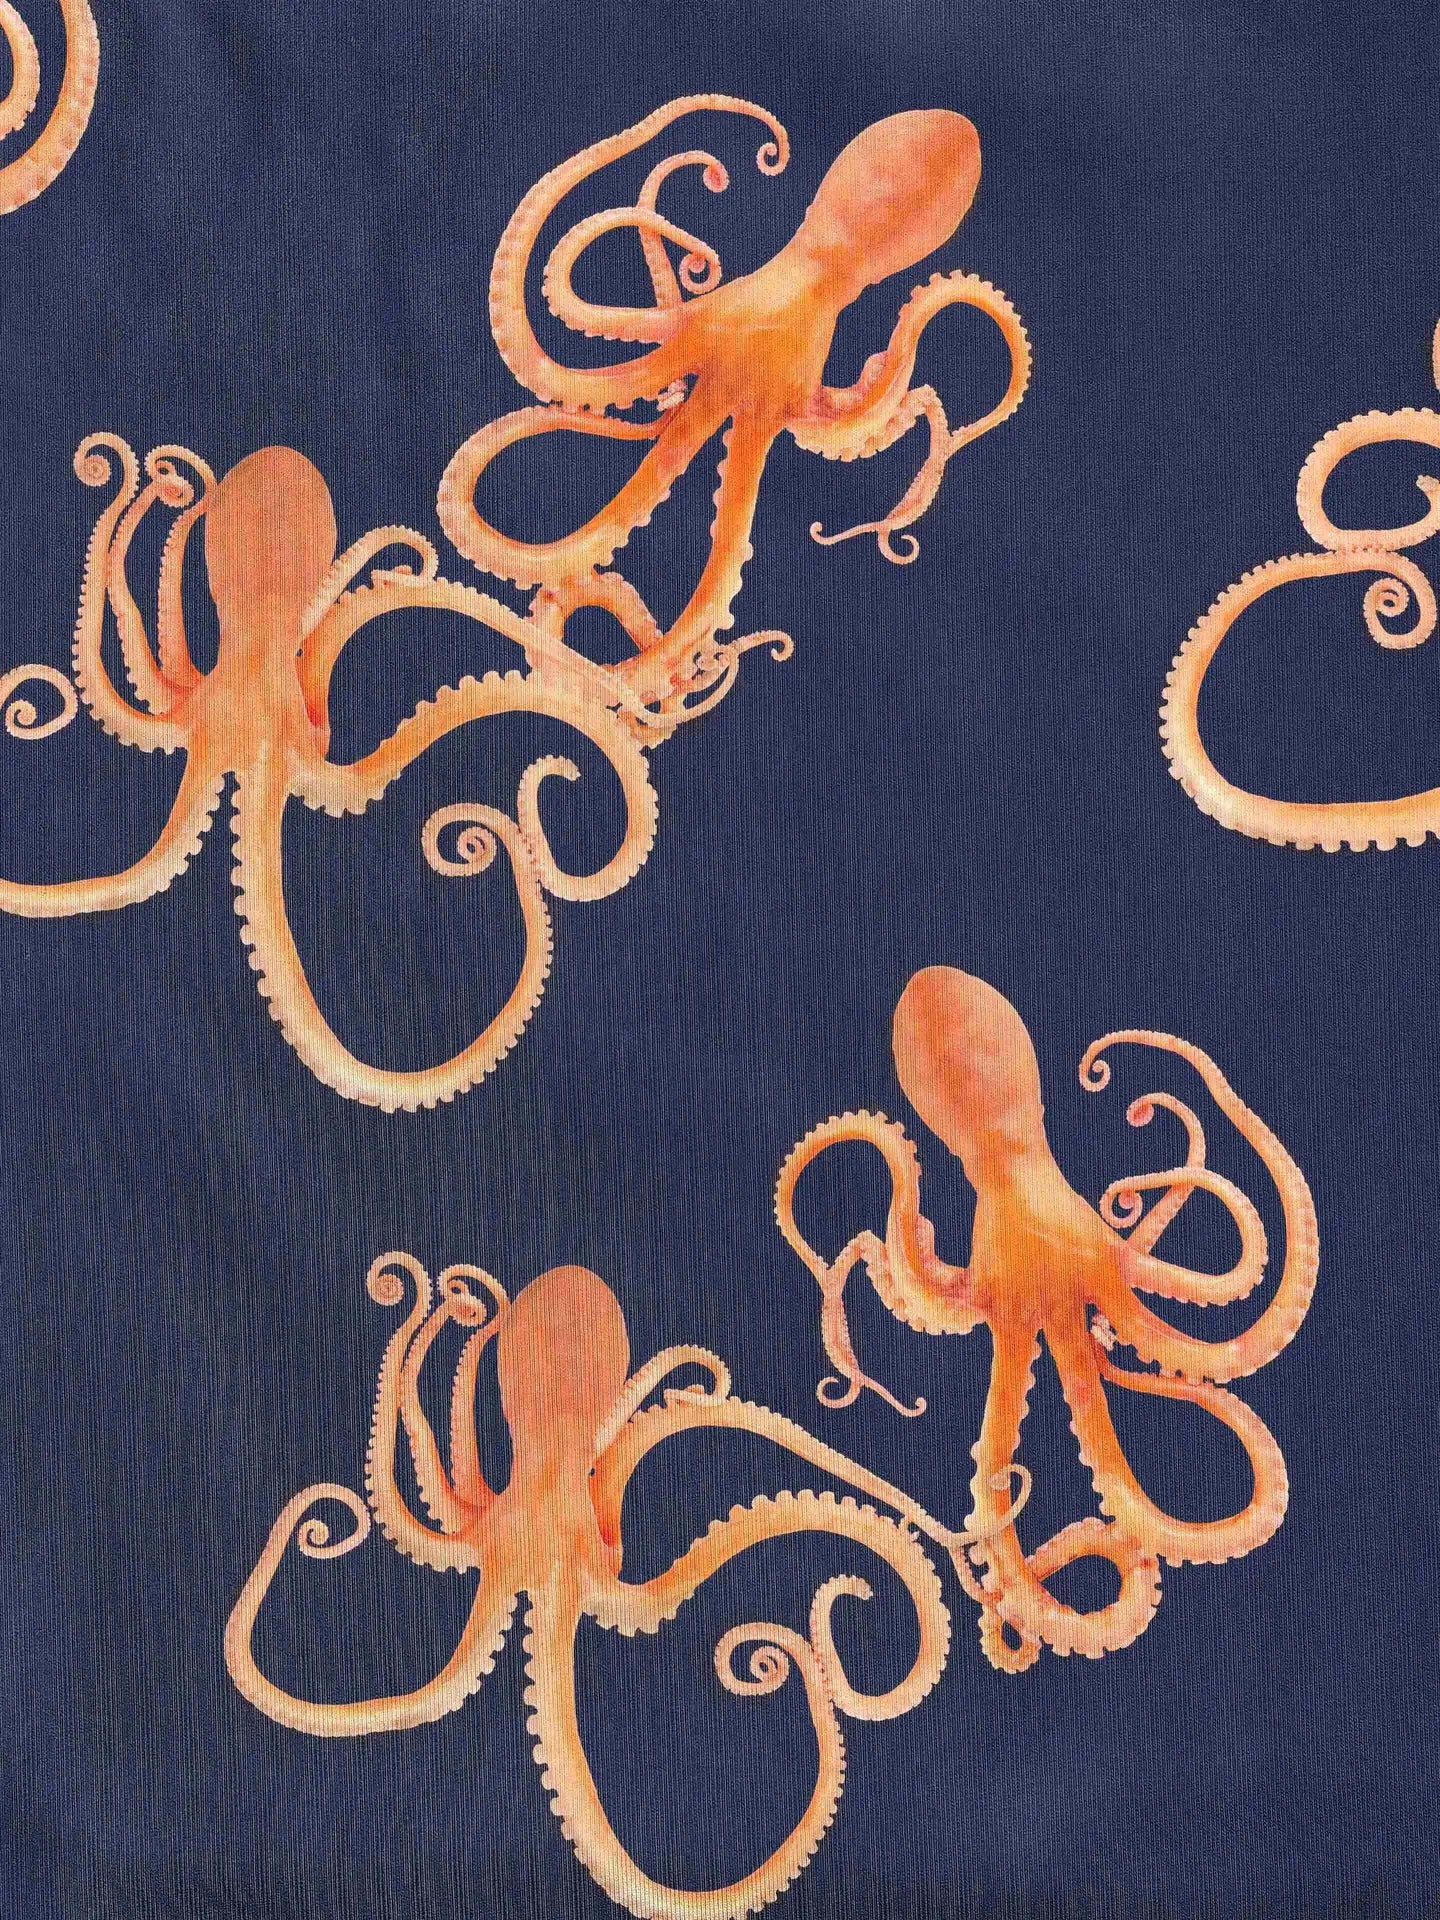 Octopus T-shirt Unisex - SNURK